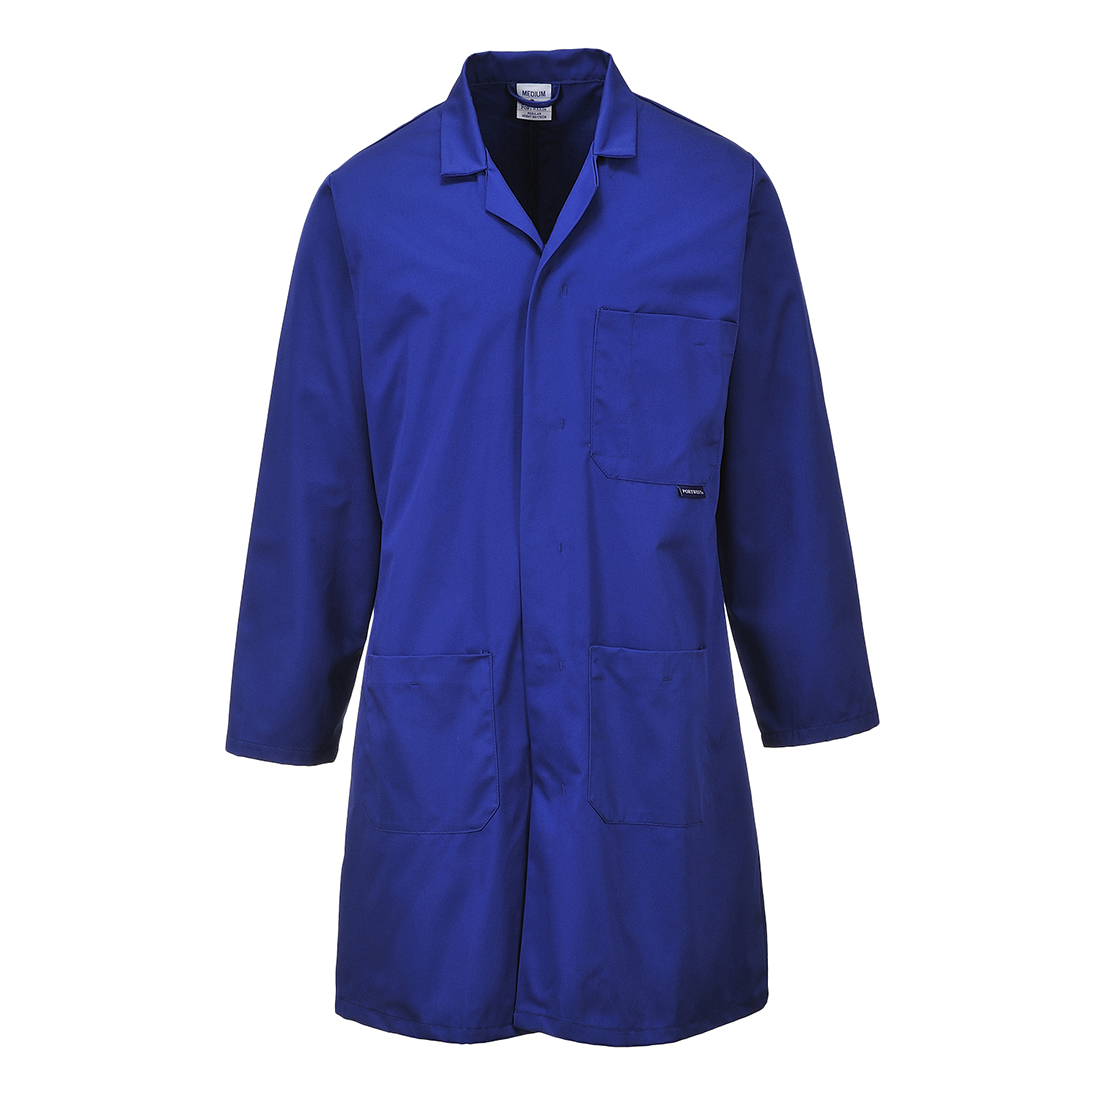 Lab Coat, Royal Blue - Size Large